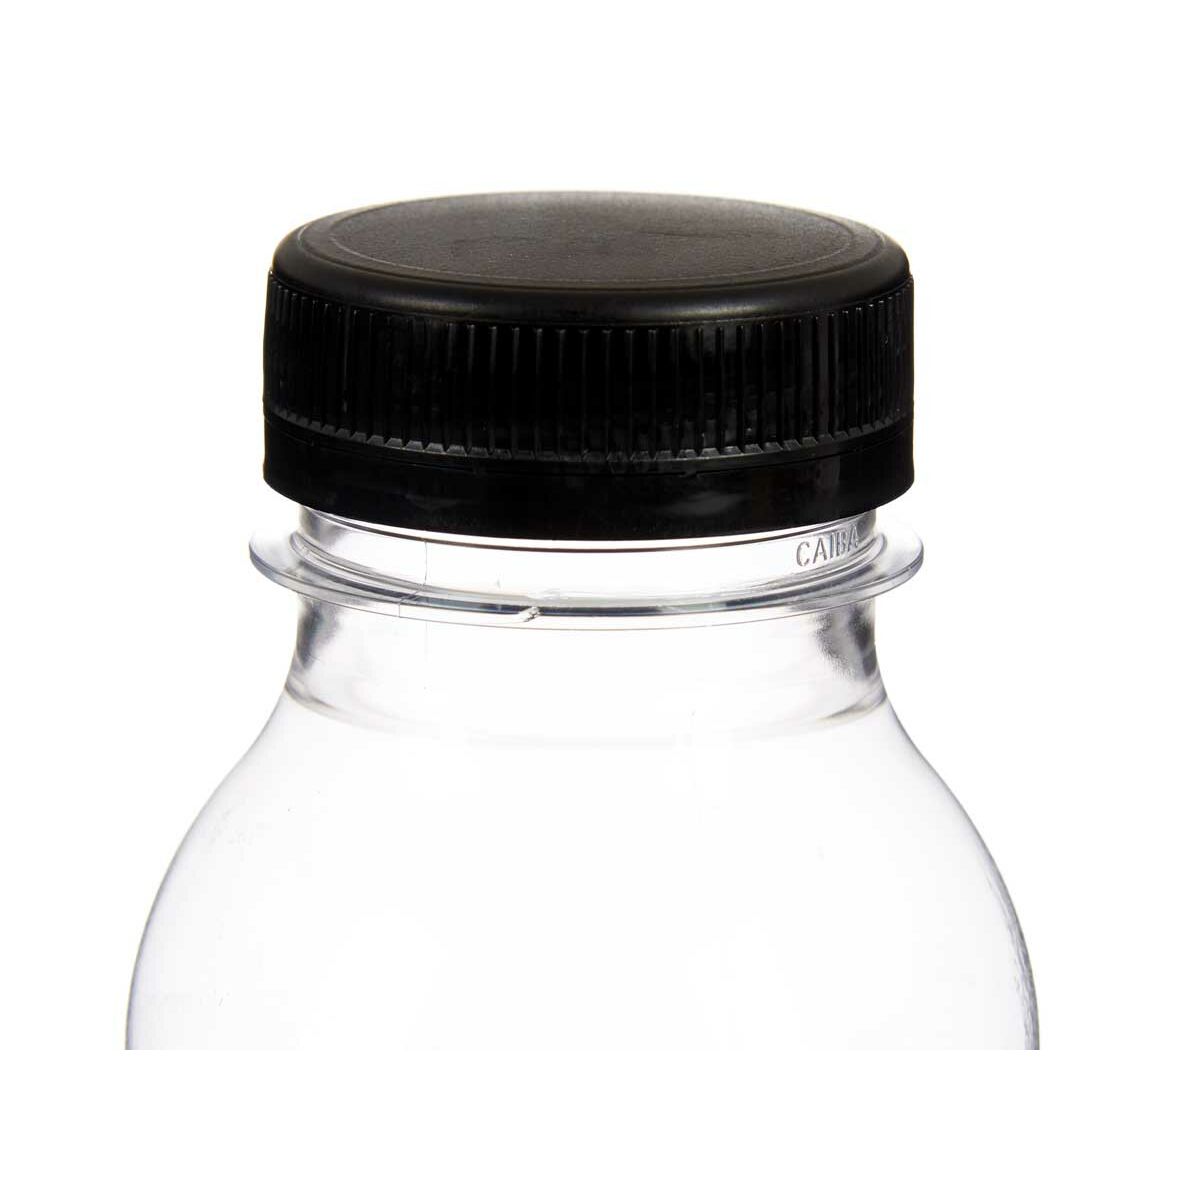 Bottle Black Transparent Plastic 250 ml 6 x 13,5 x 6 cm (24 Units)